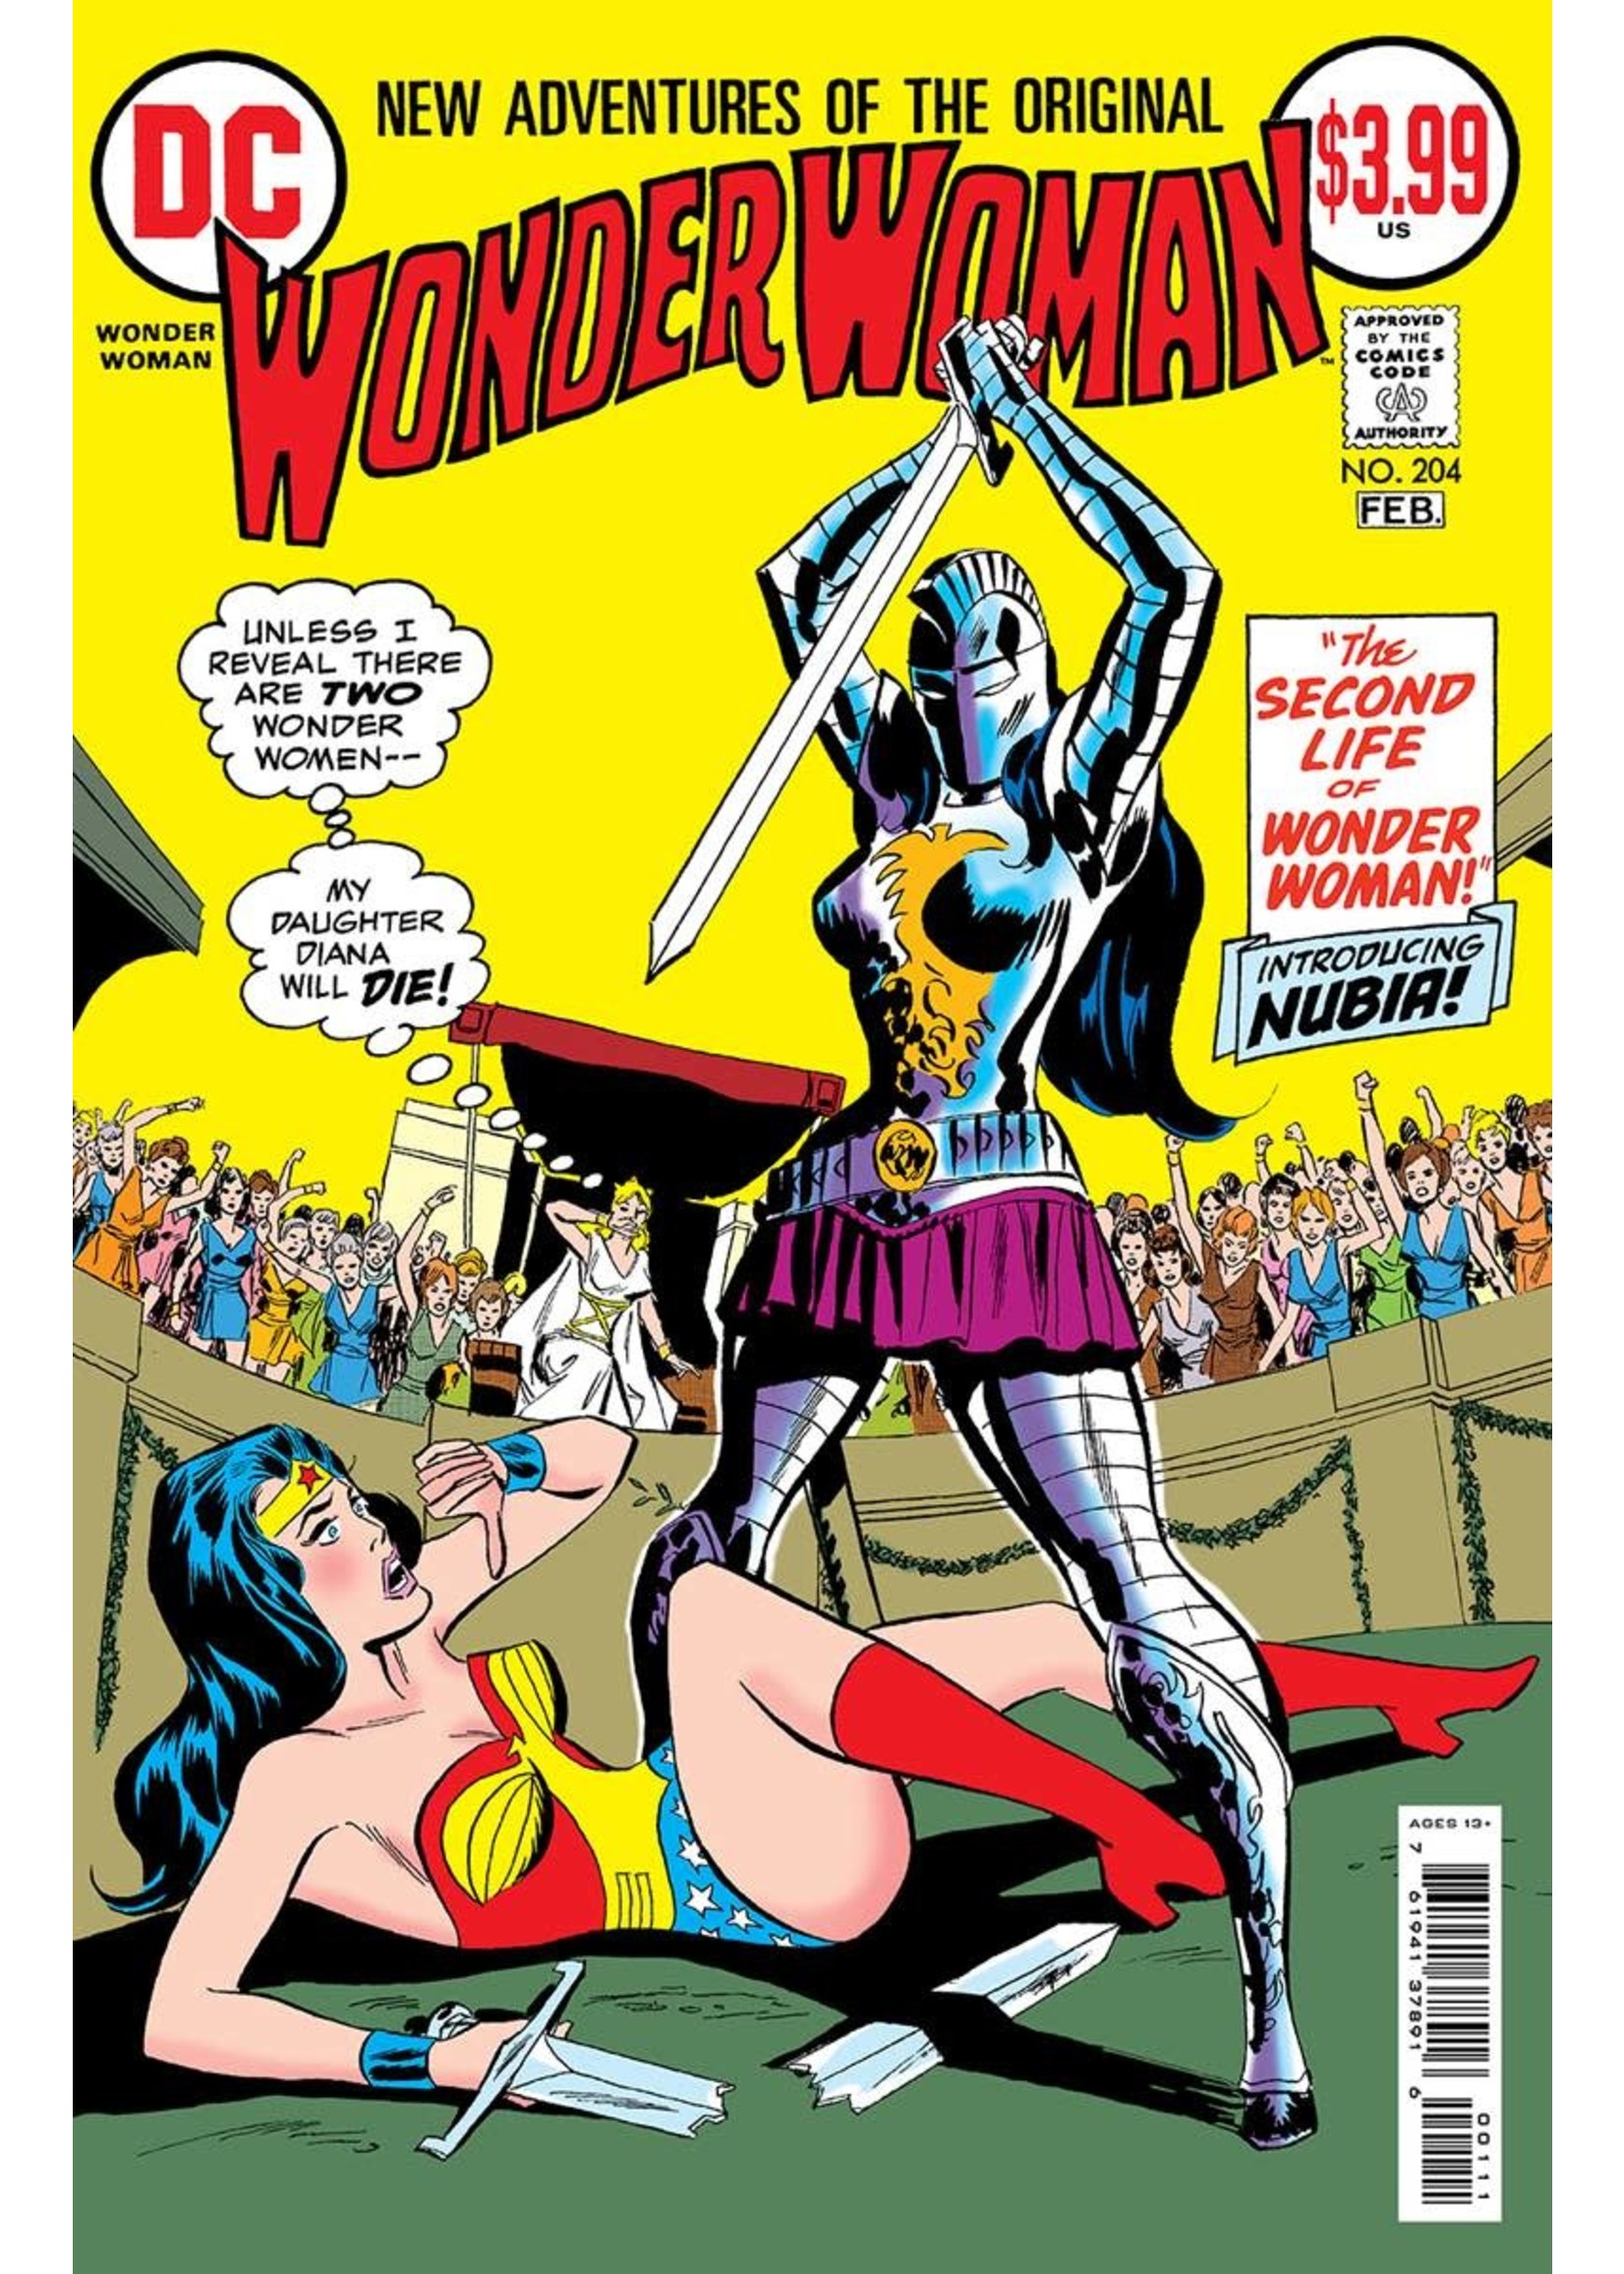 DC COMICS WONDER WOMAN #204 FACSIMILE EDITION